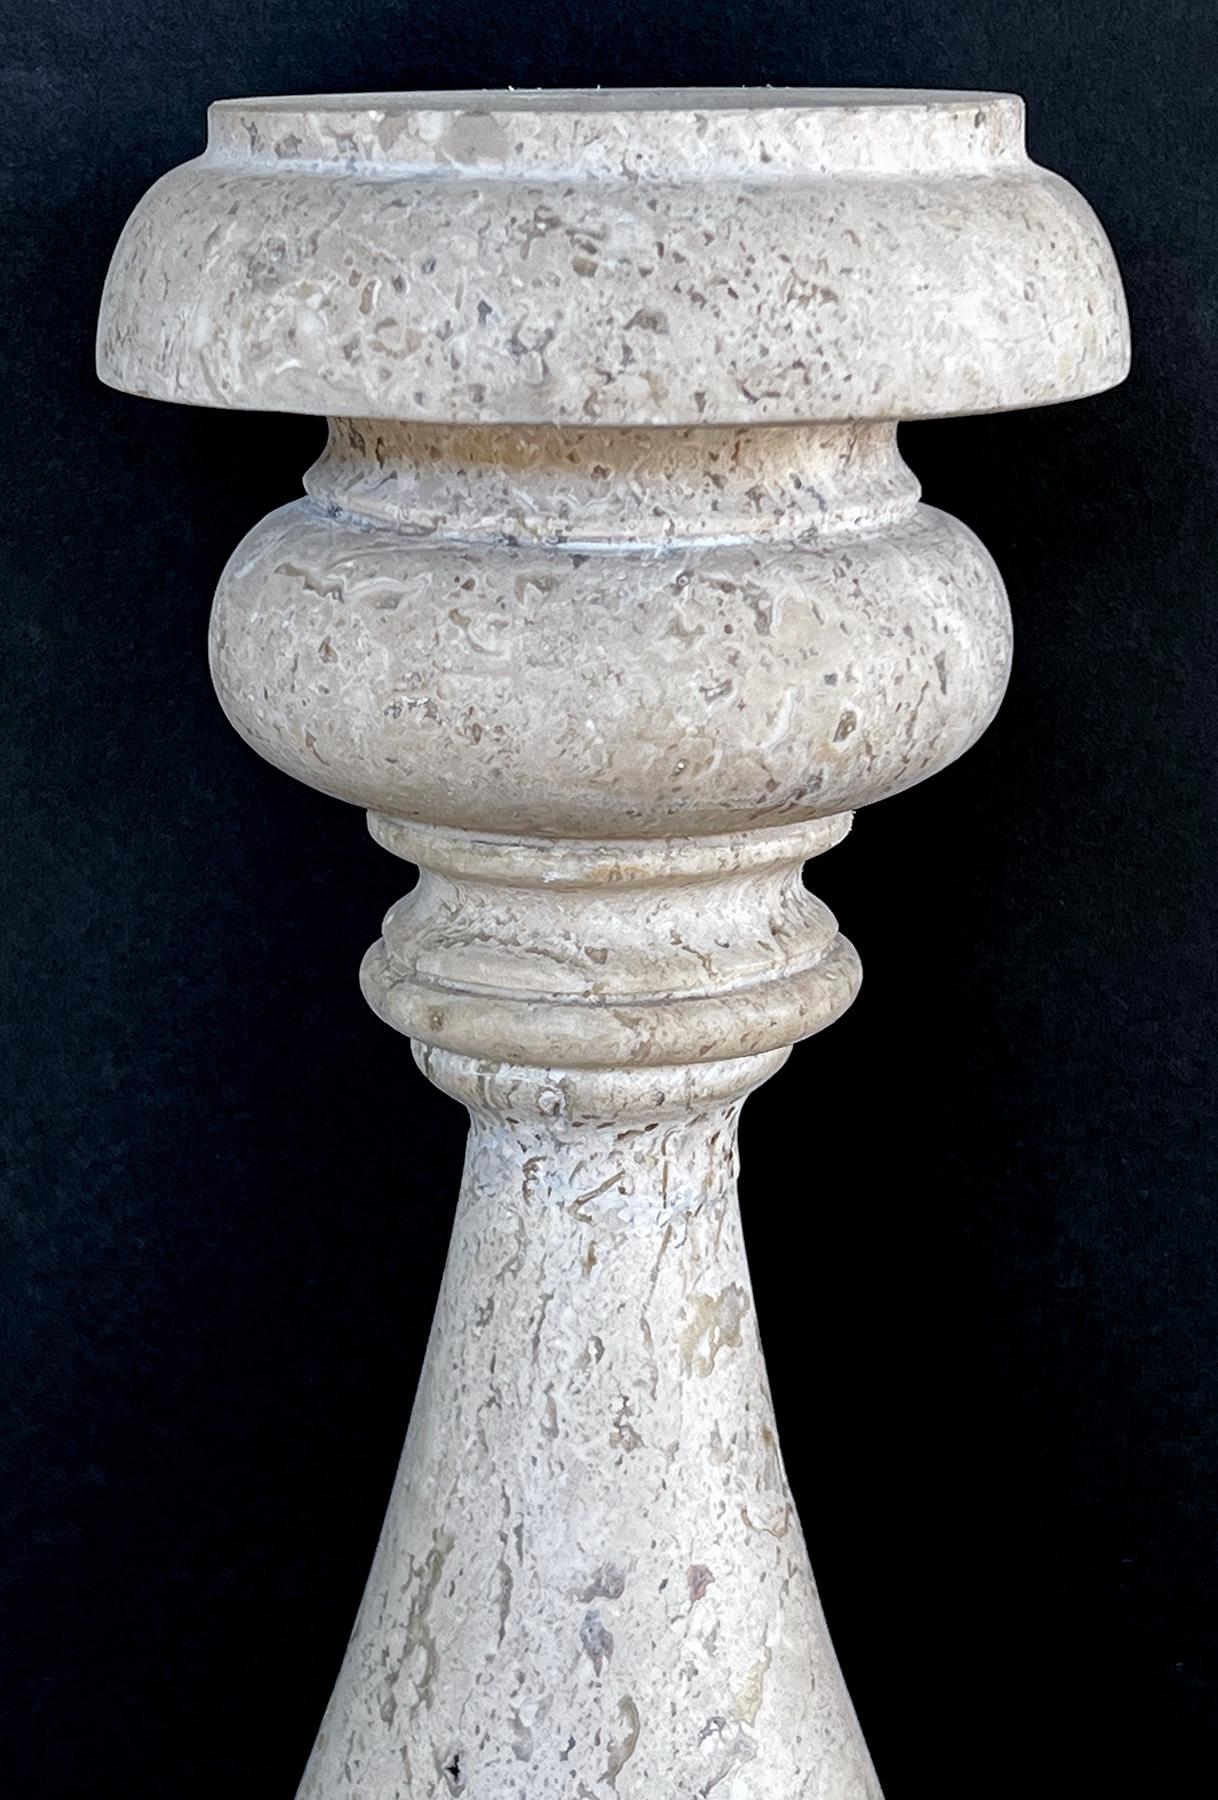 chaque lampe substantielle de forme balustre en travertin sculpté reposant sur des bases en fer ; de la collection de Craig Wright, Los Angeles